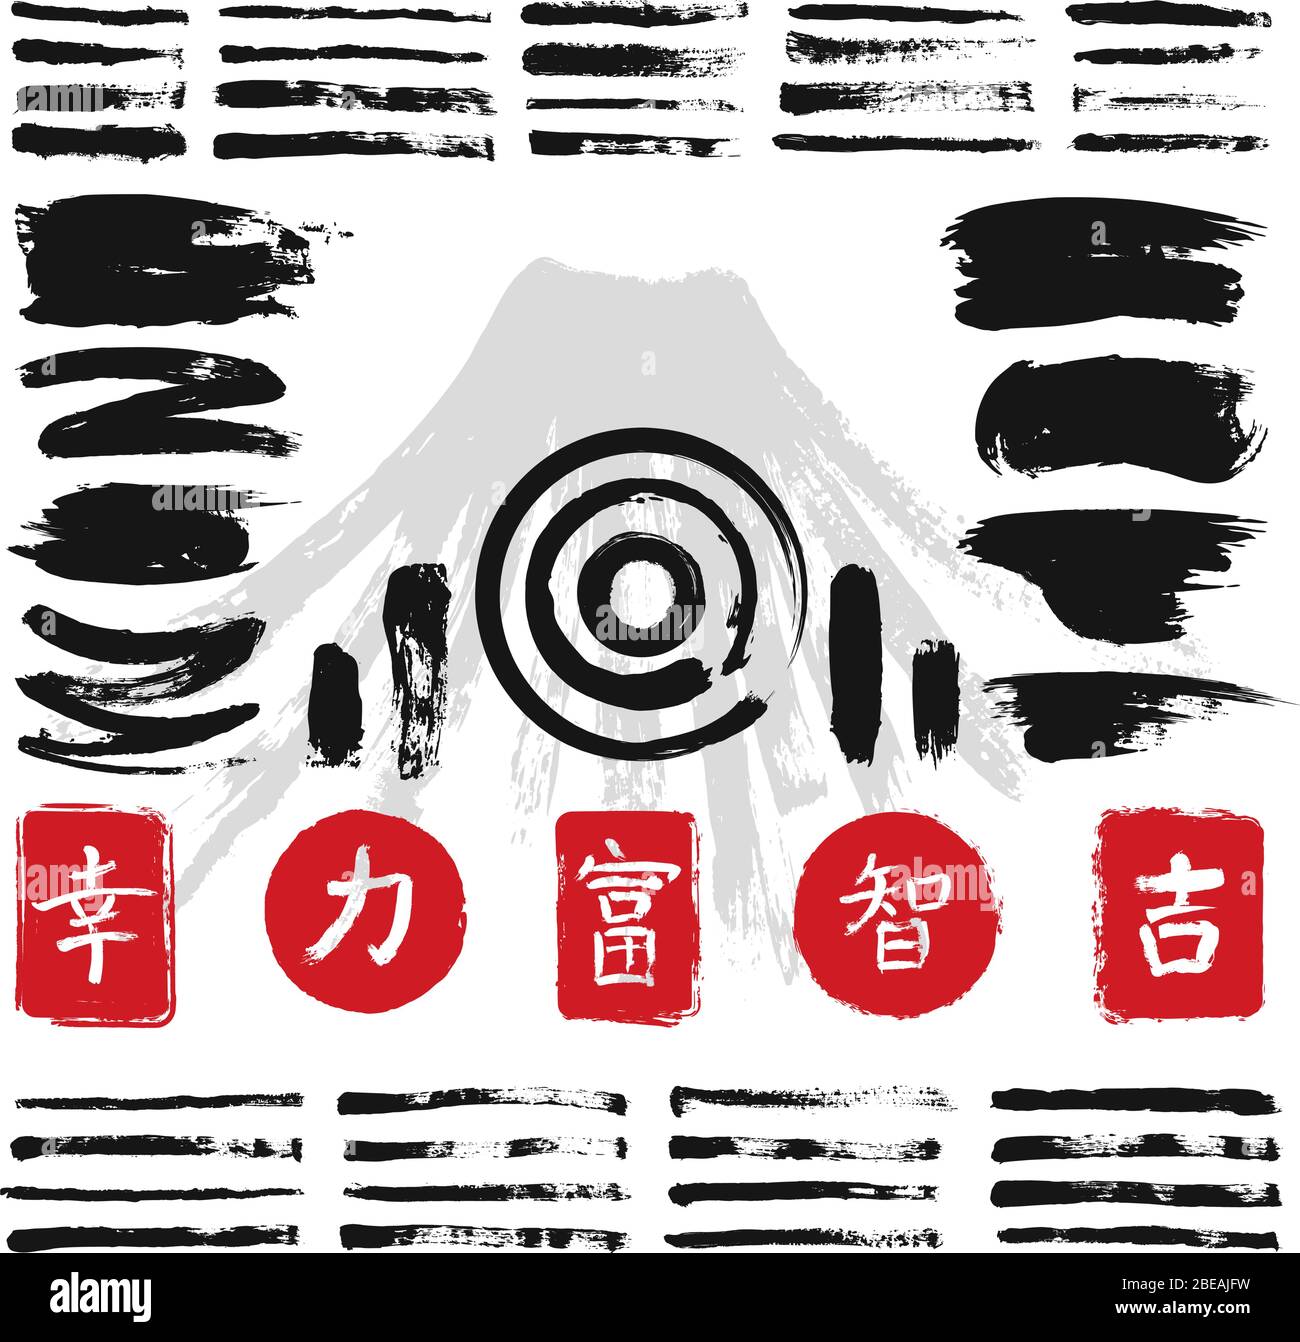 Tinte Kalligraphie Pinsel mit japanischen oder chinesischen Symbolen Vektor-Set. Japanische schwarze Farbe Strichillustration Stock Vektor